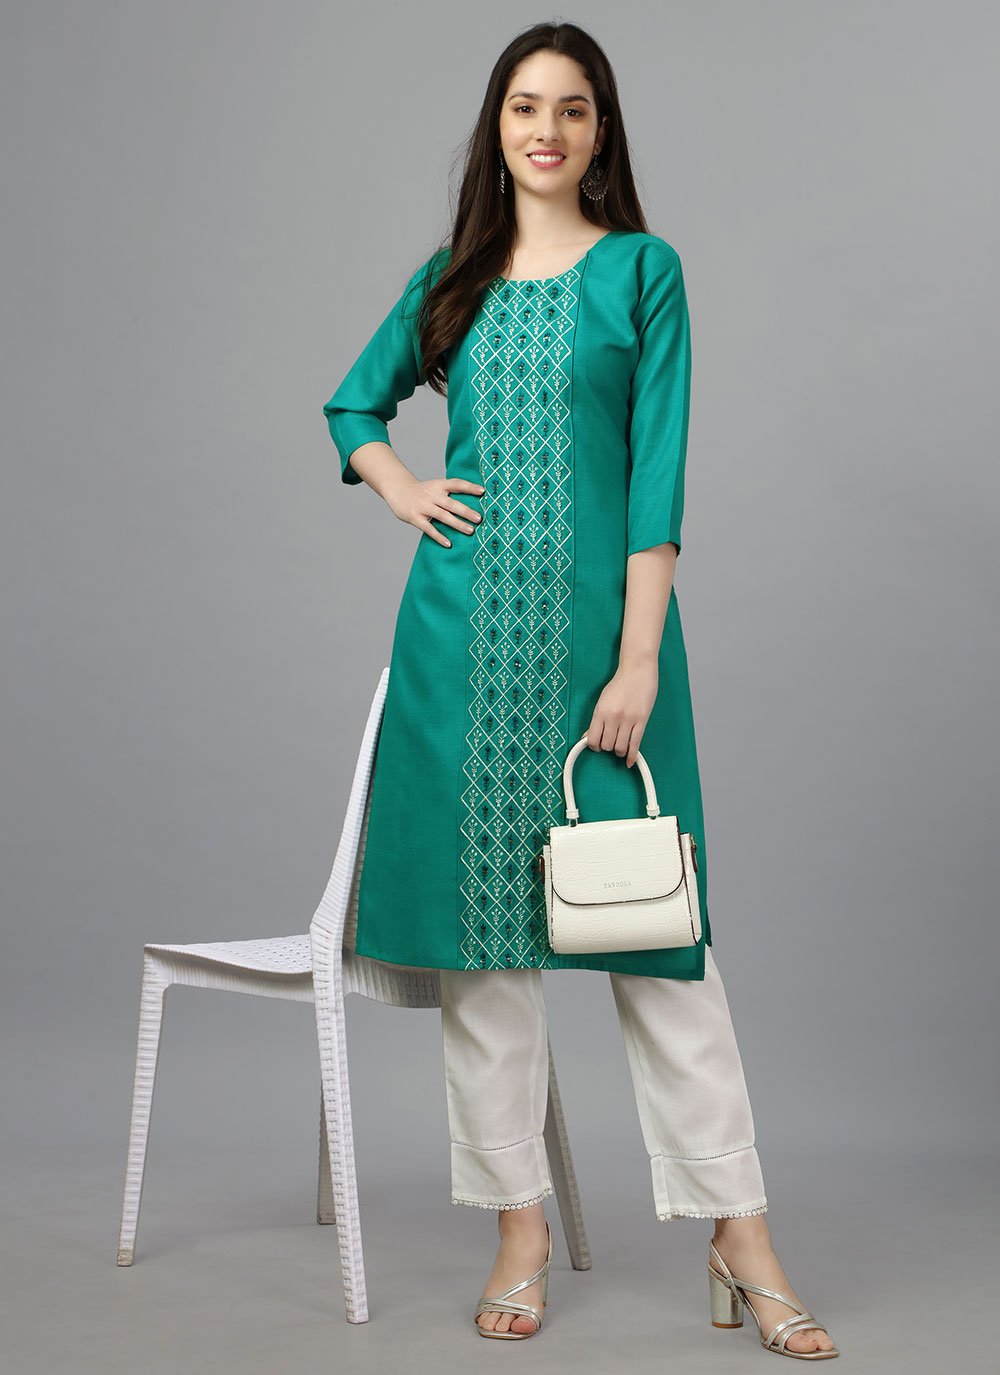 Buy shrish Women's Turquoise Color Kurti & Sharara Set-[SL-TQ- RN- KSH-S]  at Amazon.in